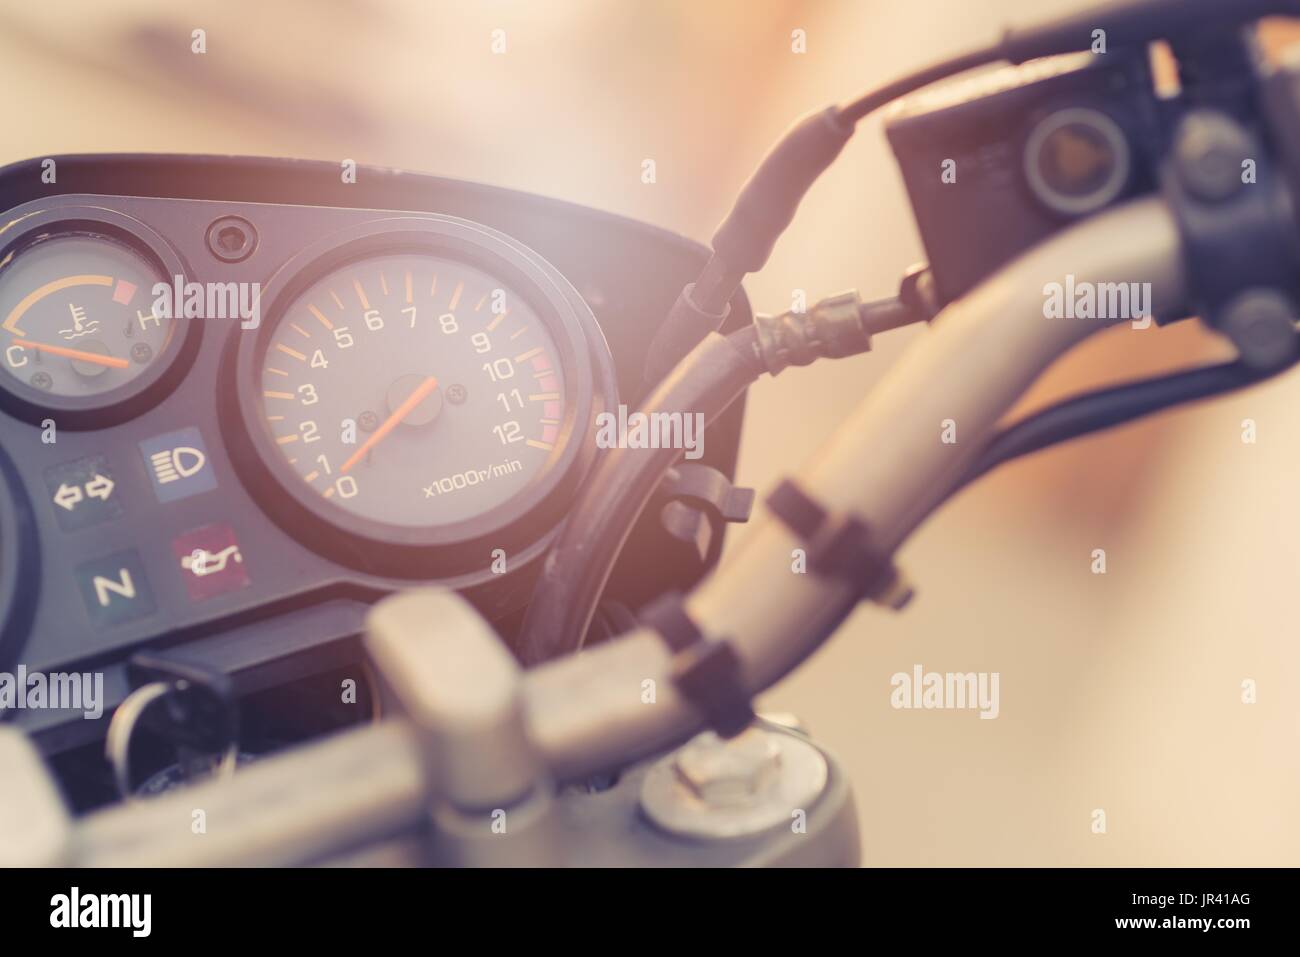 Klassische Motorrad-Control-Panel mit Tachometer und Drehzahl Zähler  Stockfotografie - Alamy